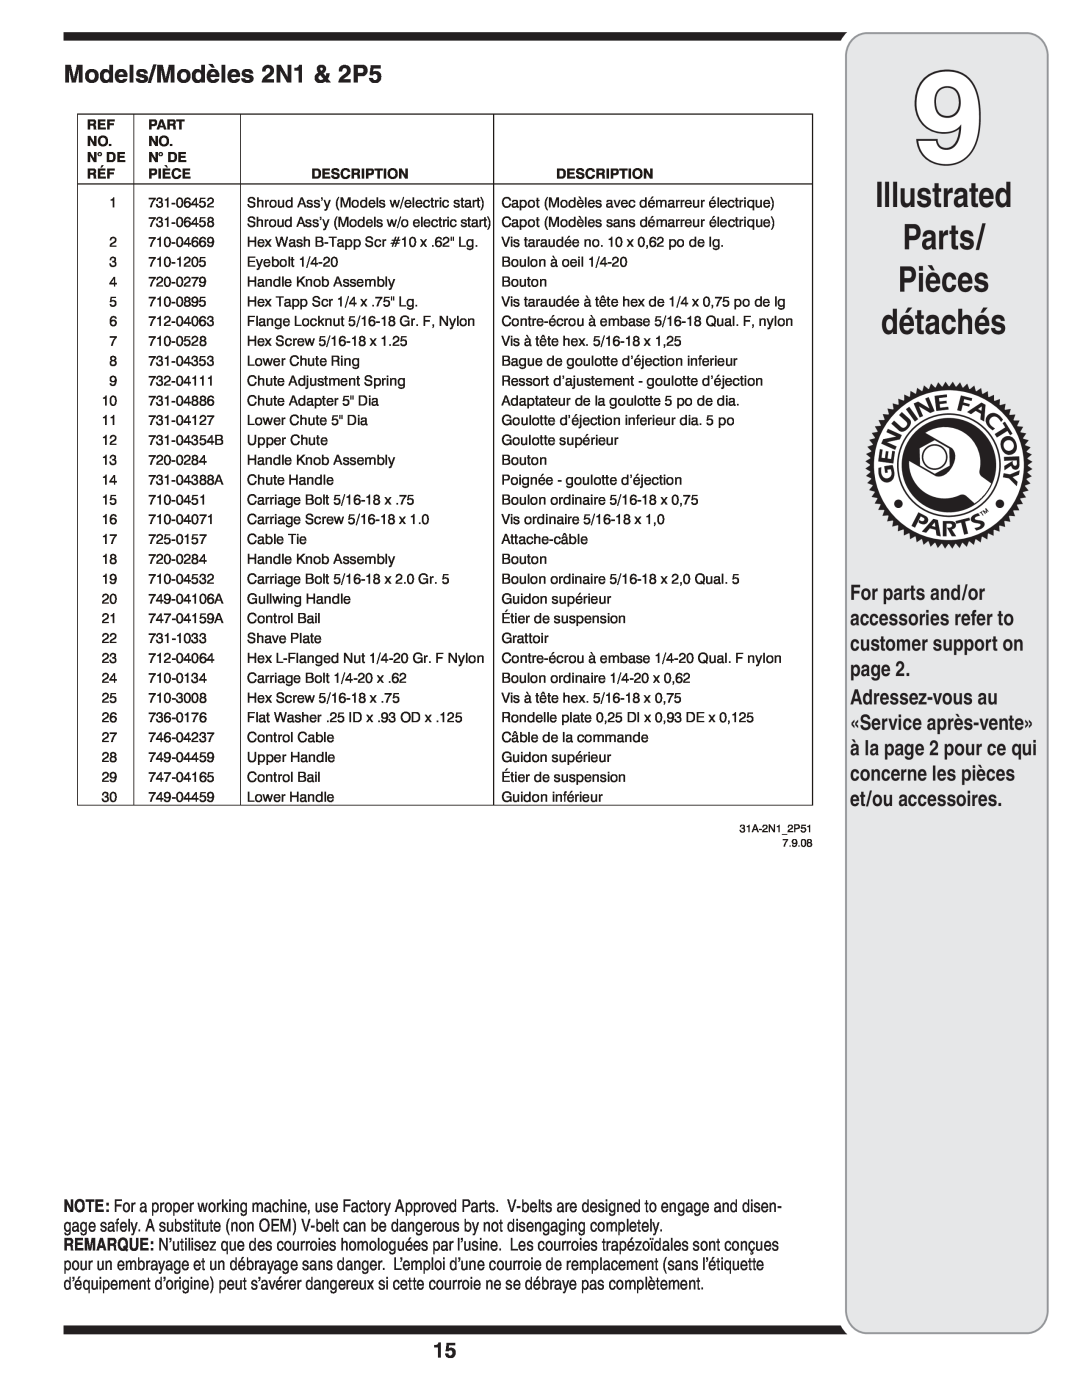 MTD warranty Illustrated Parts Pièces détachés, Models/Modèles 2N1 & 2P5, Adressez-vousau «Service après-vente», N De 